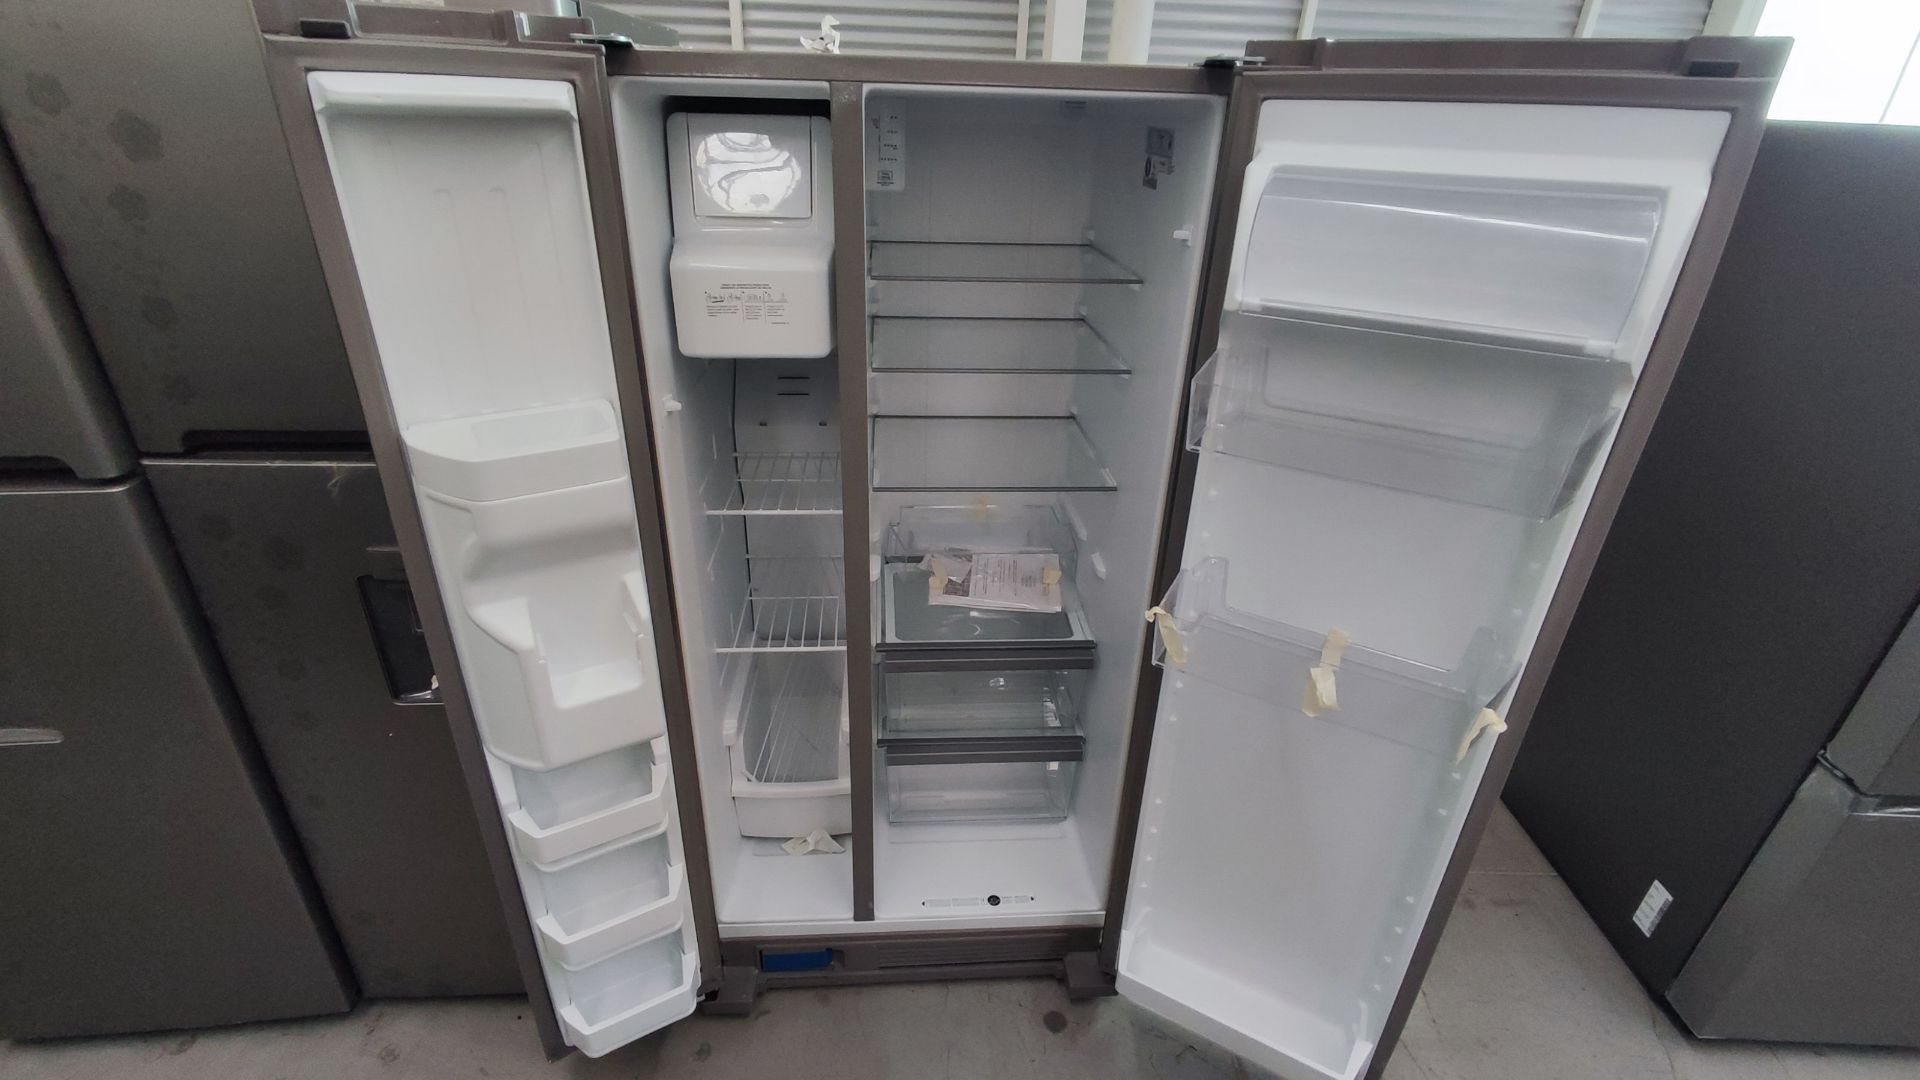 Lote Conformado por 2 Refrigeradores, Contiene; 1 Refrigerador con Dispensador de Agua Marca Whirlp - Image 7 of 13